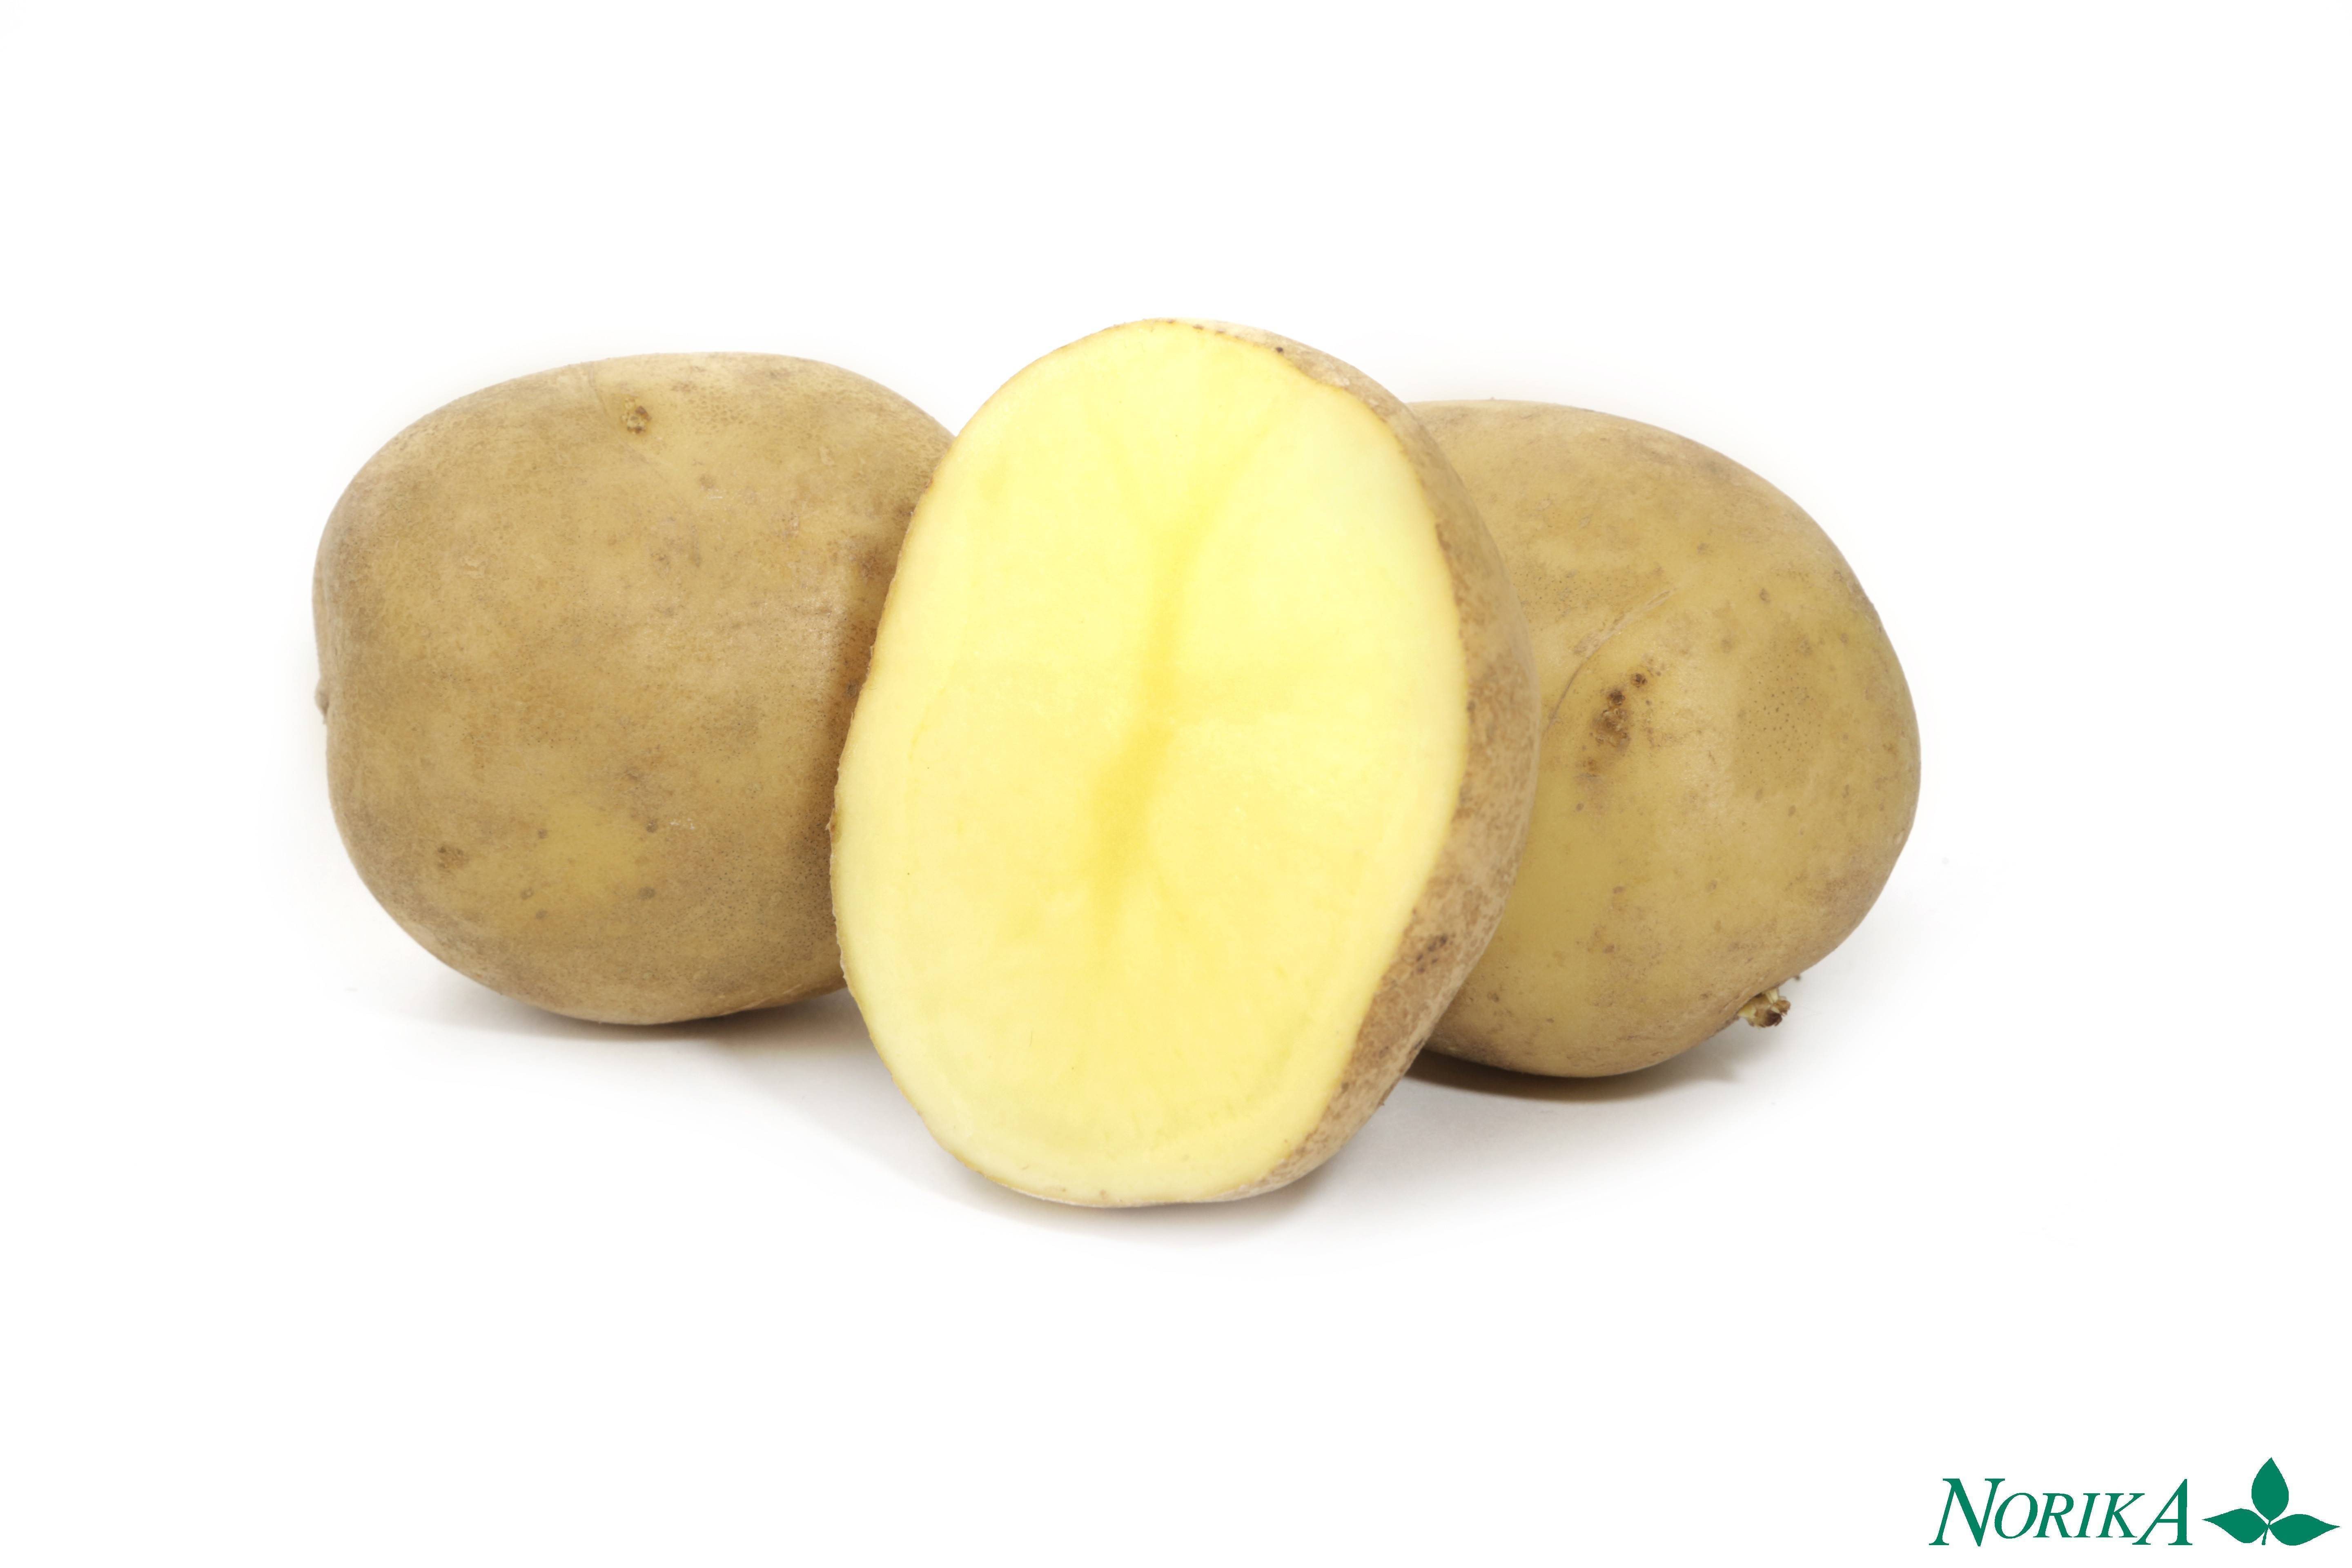 Адретта: описание семенного сорта картофеля, характеристики, агротехника